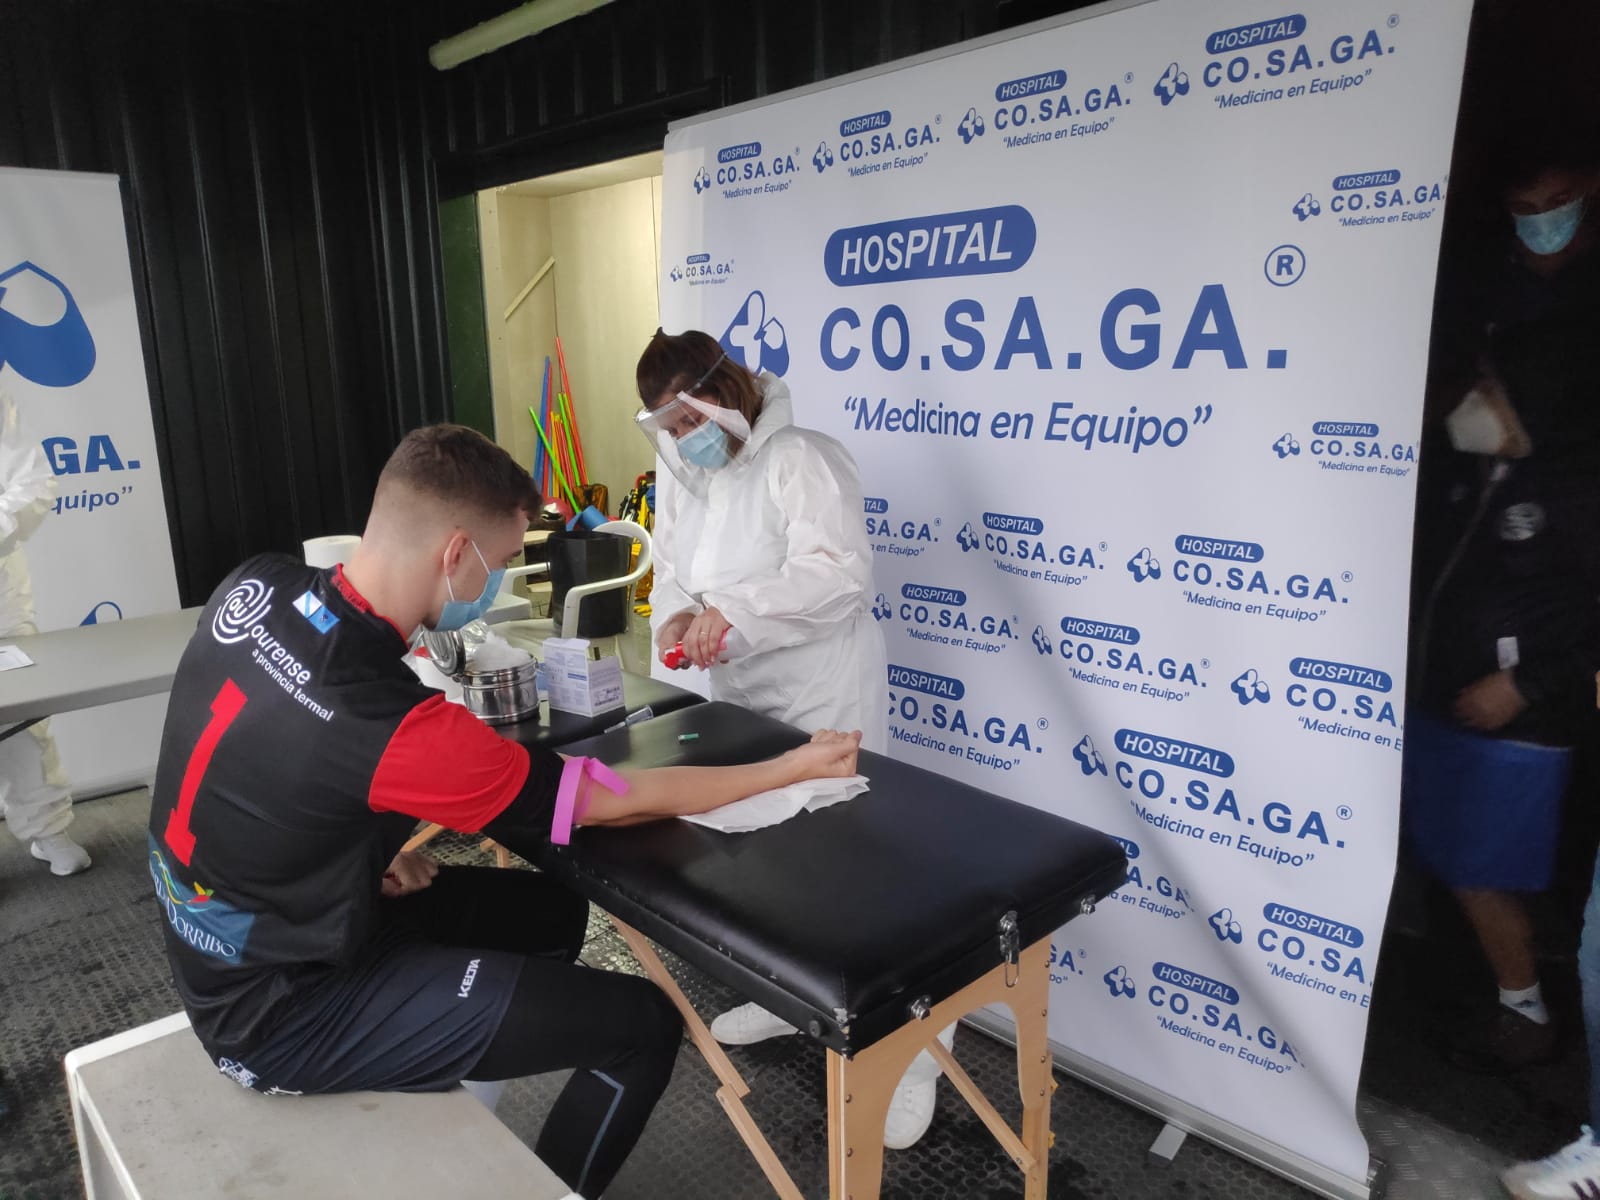 You are currently viewing El Hospital Cosaga y Cendisa realizan test serológicos a la UD Ourense